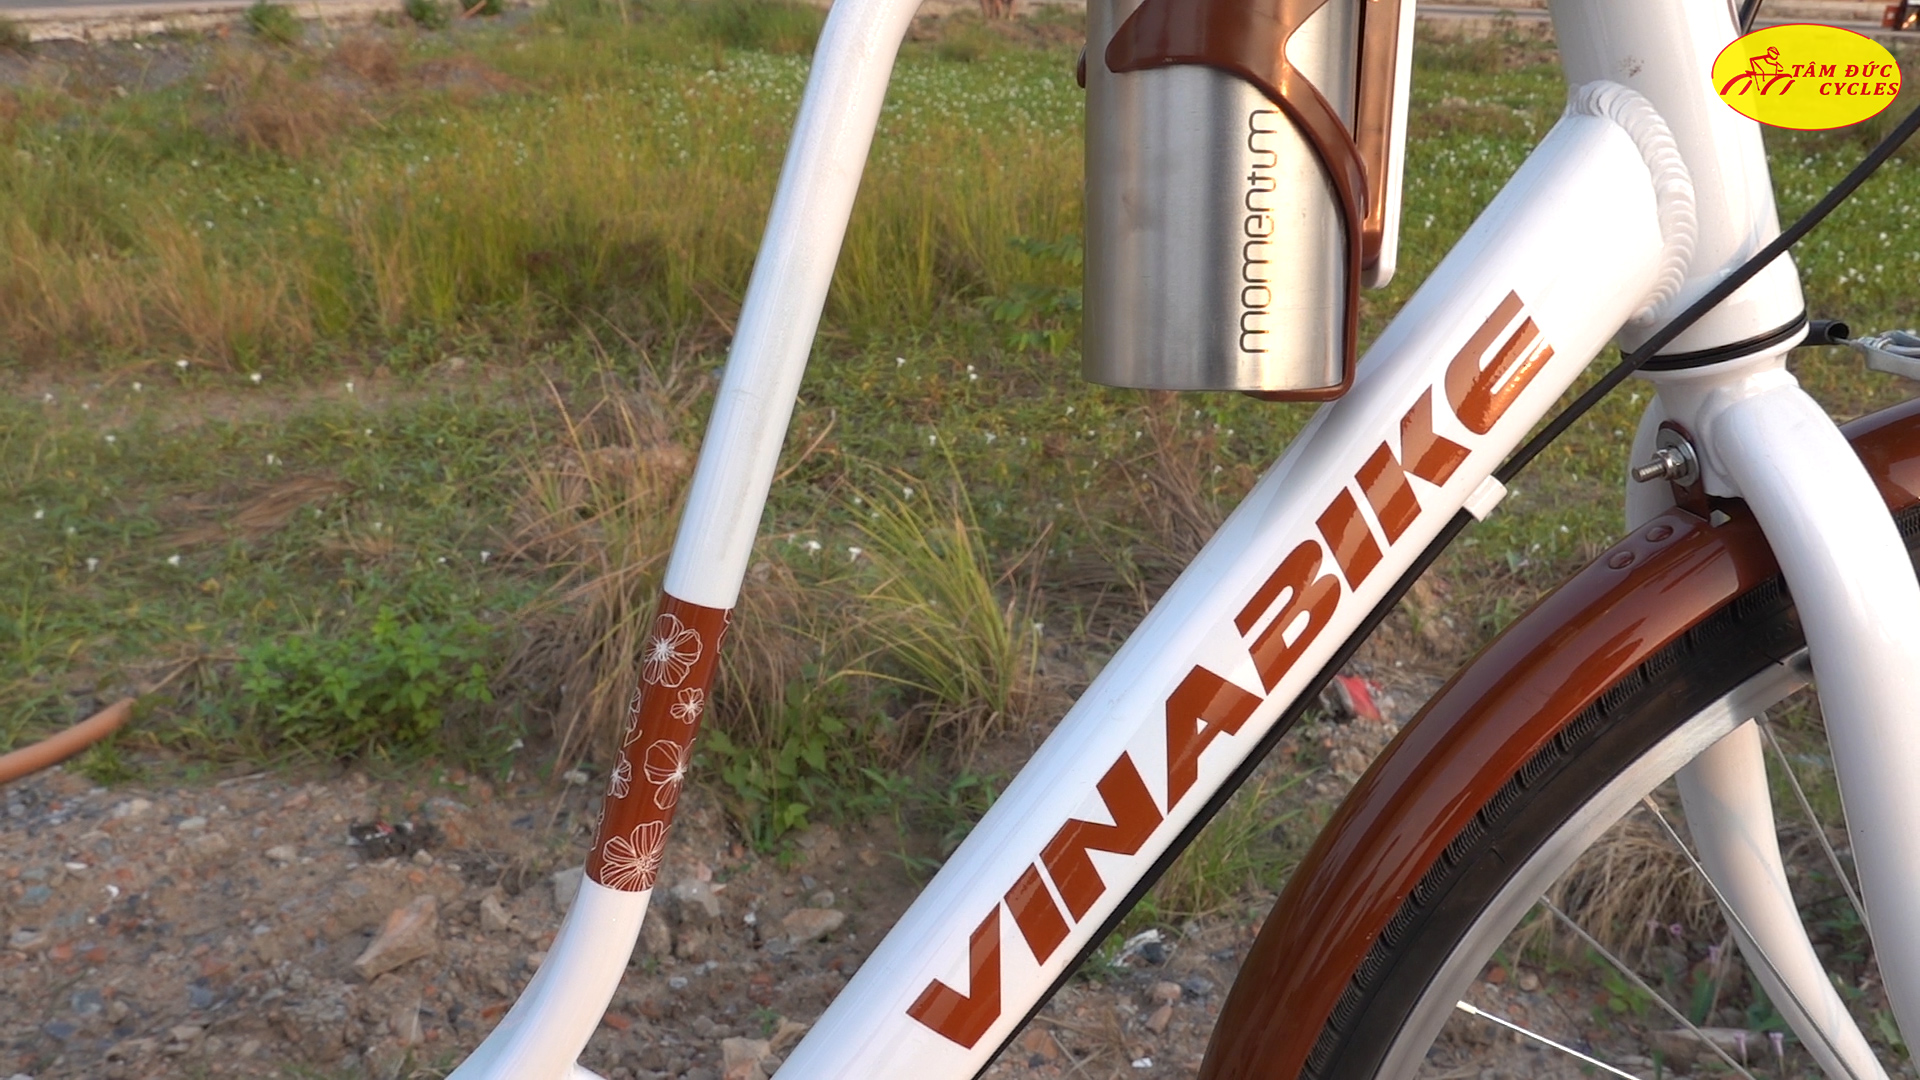 Xe đạp VinaBike là của nước nào?